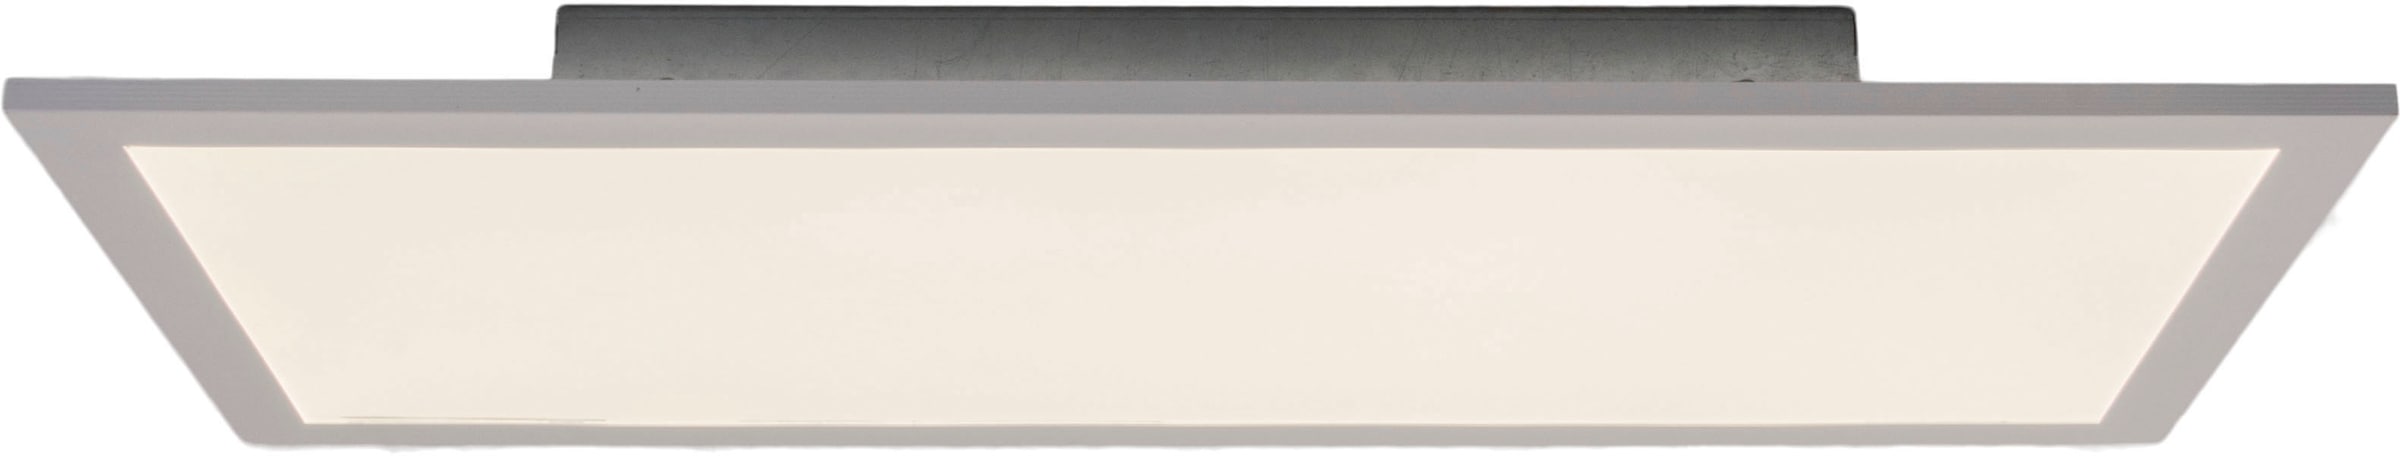 näve LED Panel »Nicola«, 1 flammig-flammig, weiß, Lichtfarbe neutralweiß,  Länge 59,5cm, LED, inkl. Treiber bestellen im OTTO Online Shop